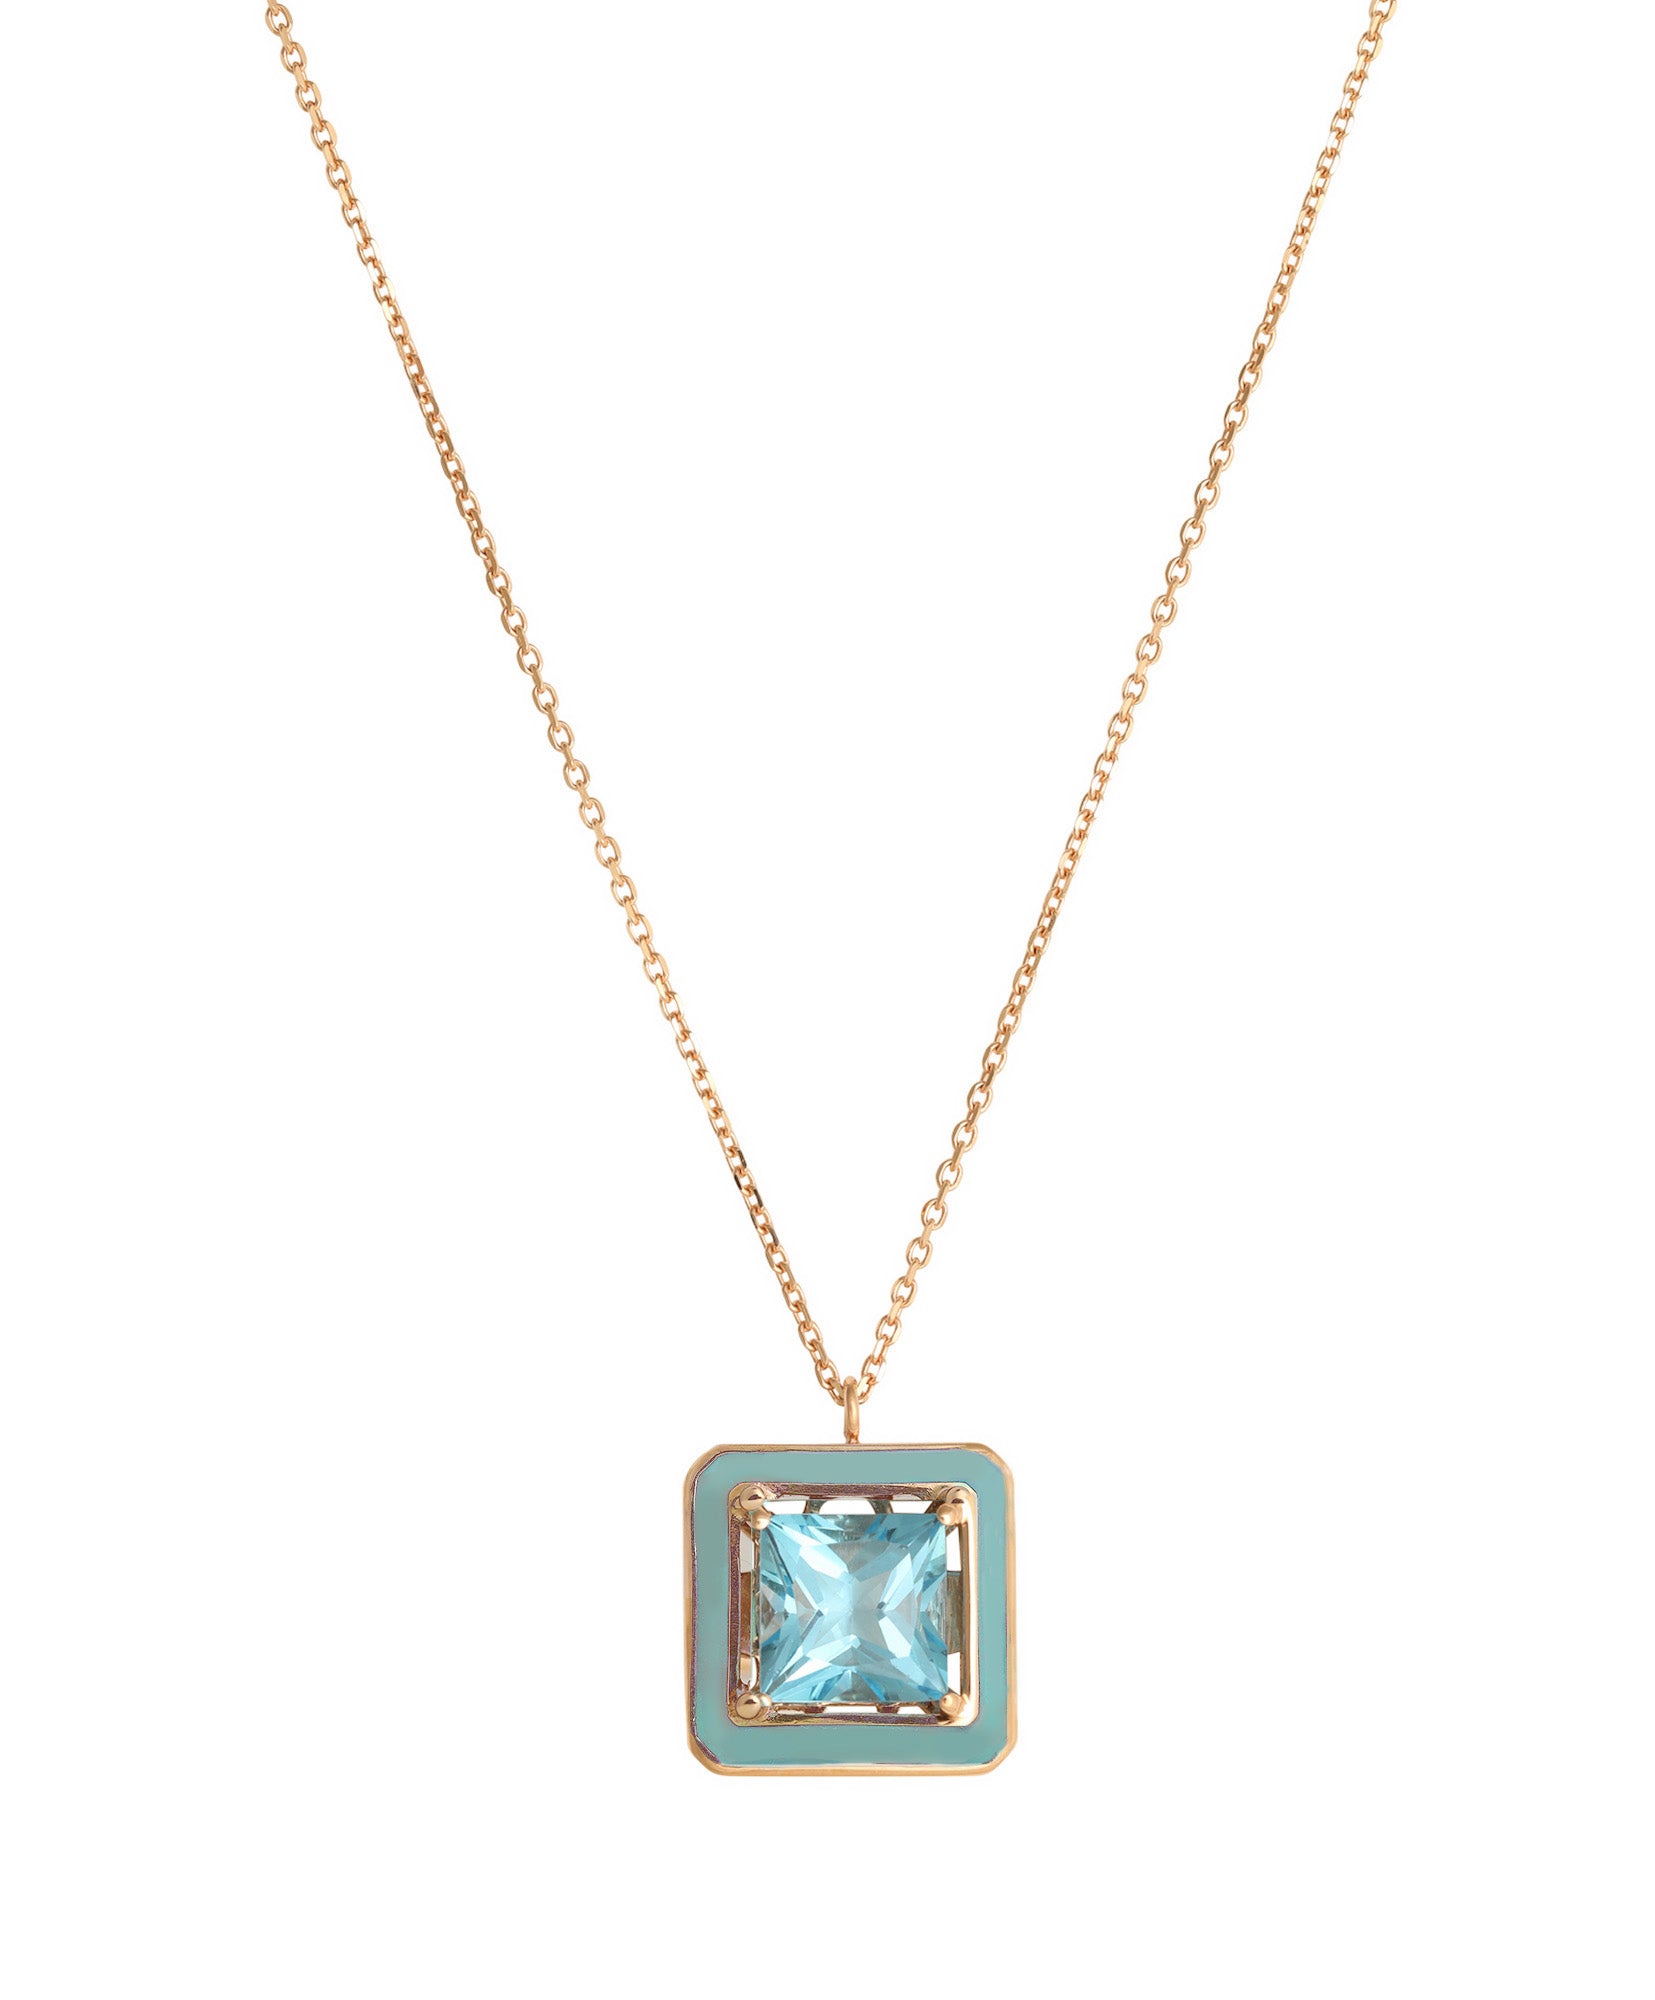 J by boghossian, blue topaze, necklace, turquoise enamel, gold